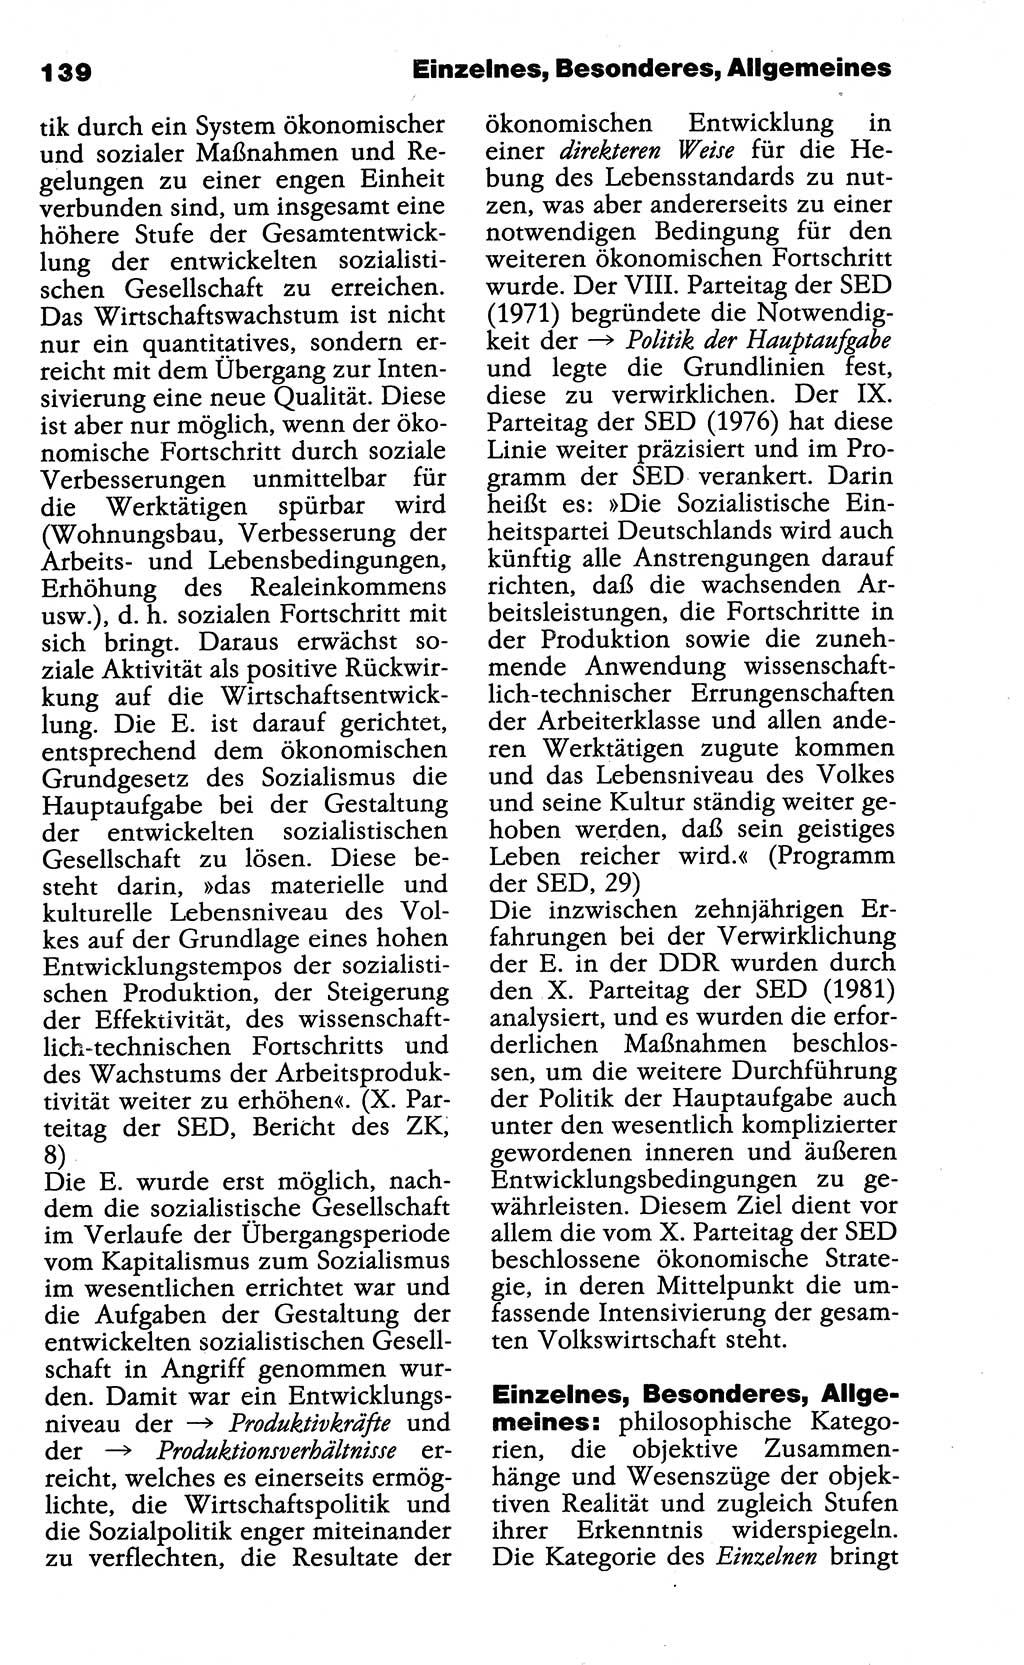 Wörterbuch der marxistisch-leninistischen Philosophie [Deutsche Demokratische Republik (DDR)] 1985, Seite 139 (Wb. ML Phil. DDR 1985, S. 139)